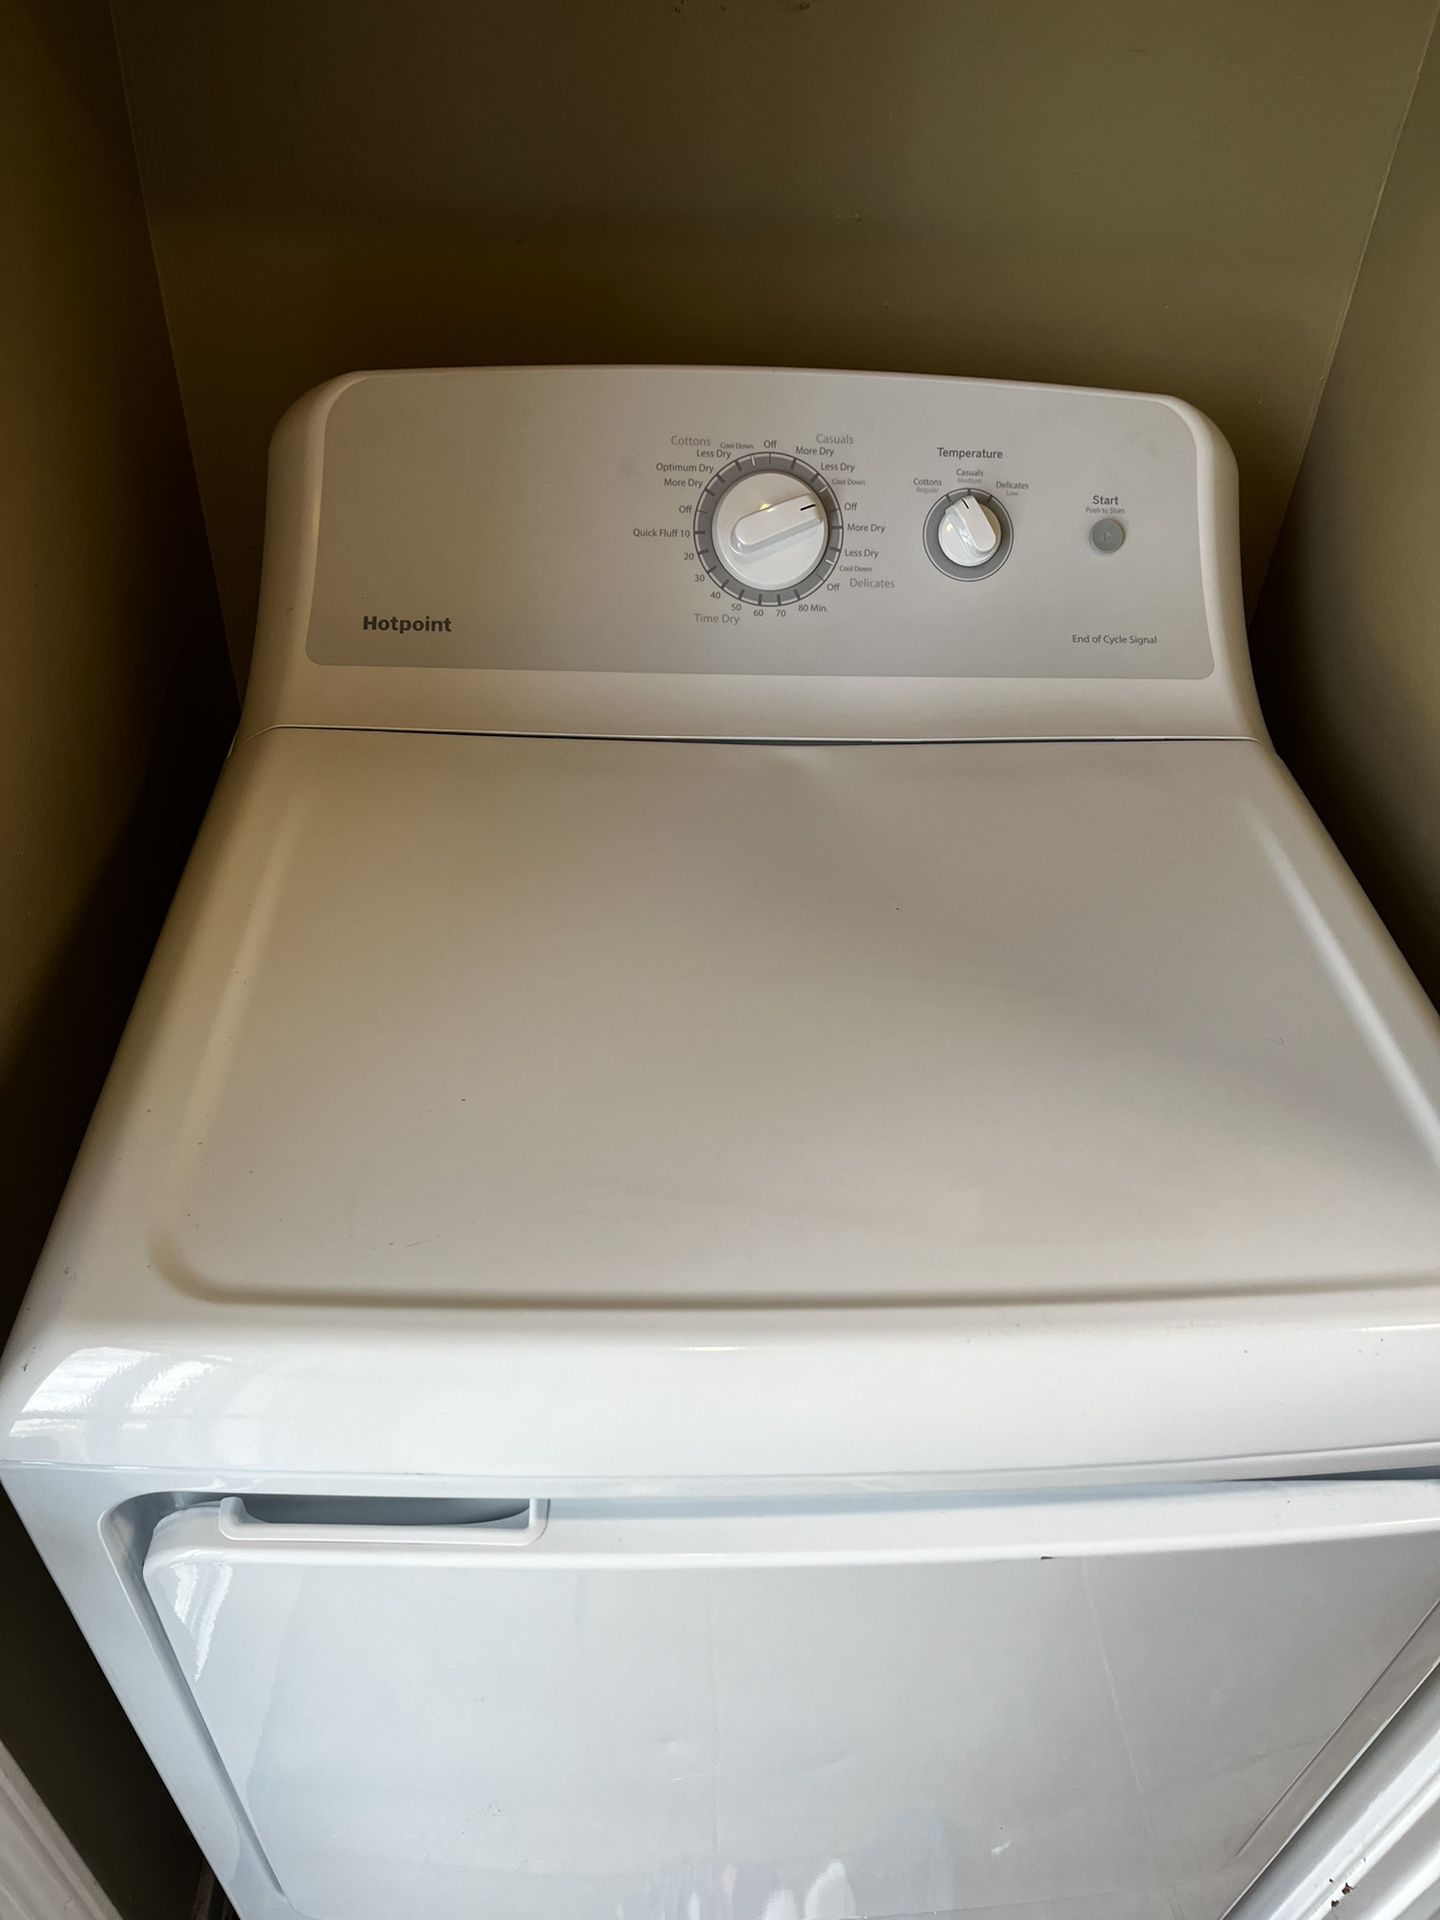 Hot point Washer Dryer set